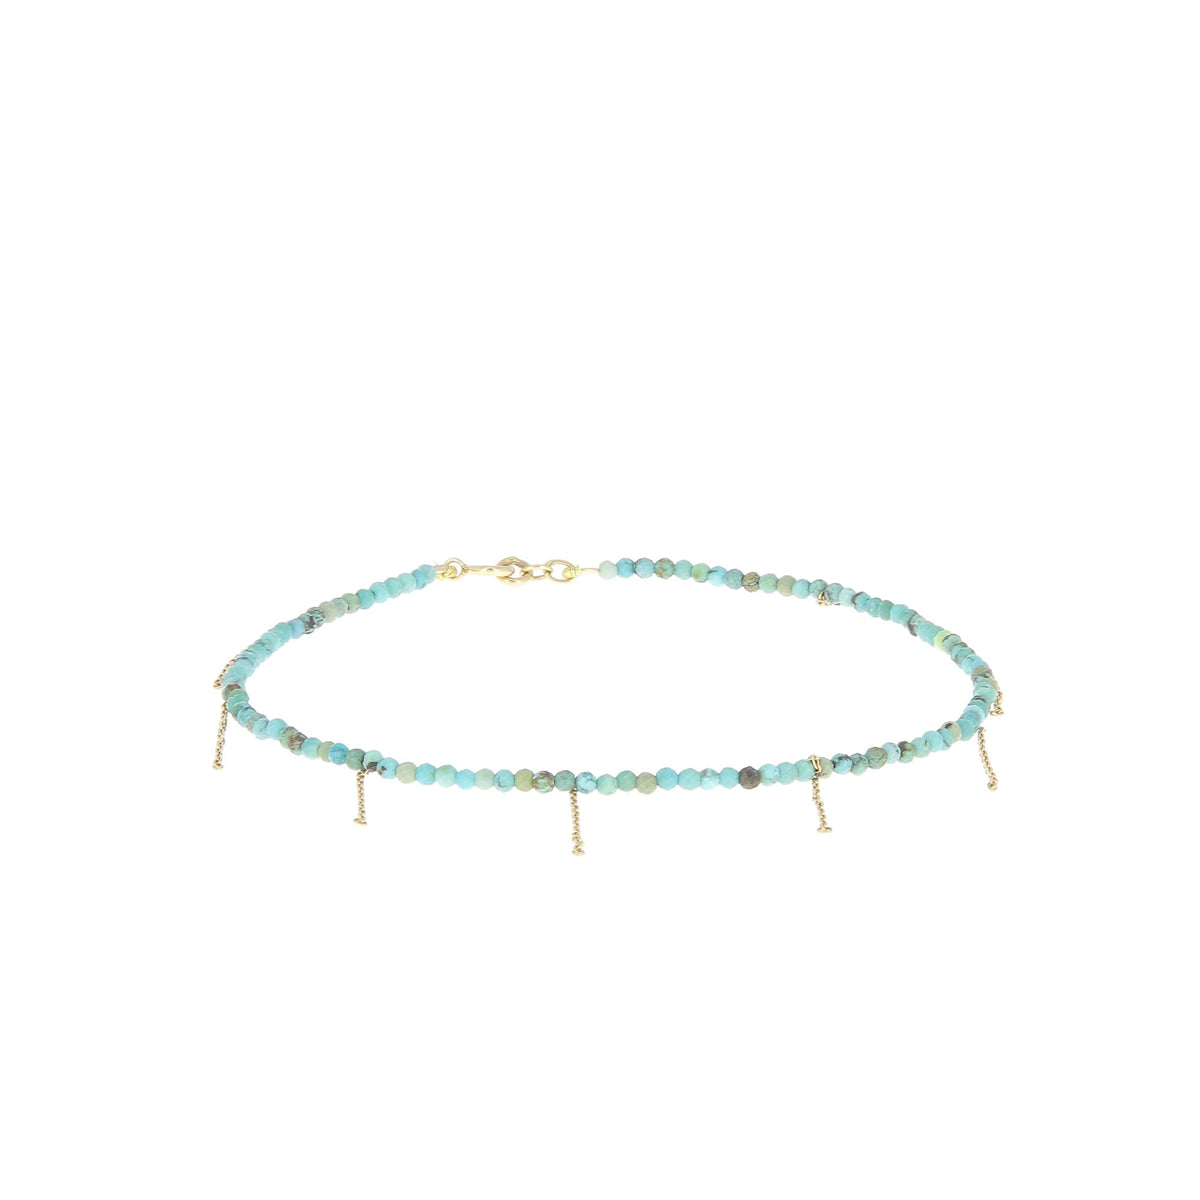 Turquoise summertime ankle bracelet